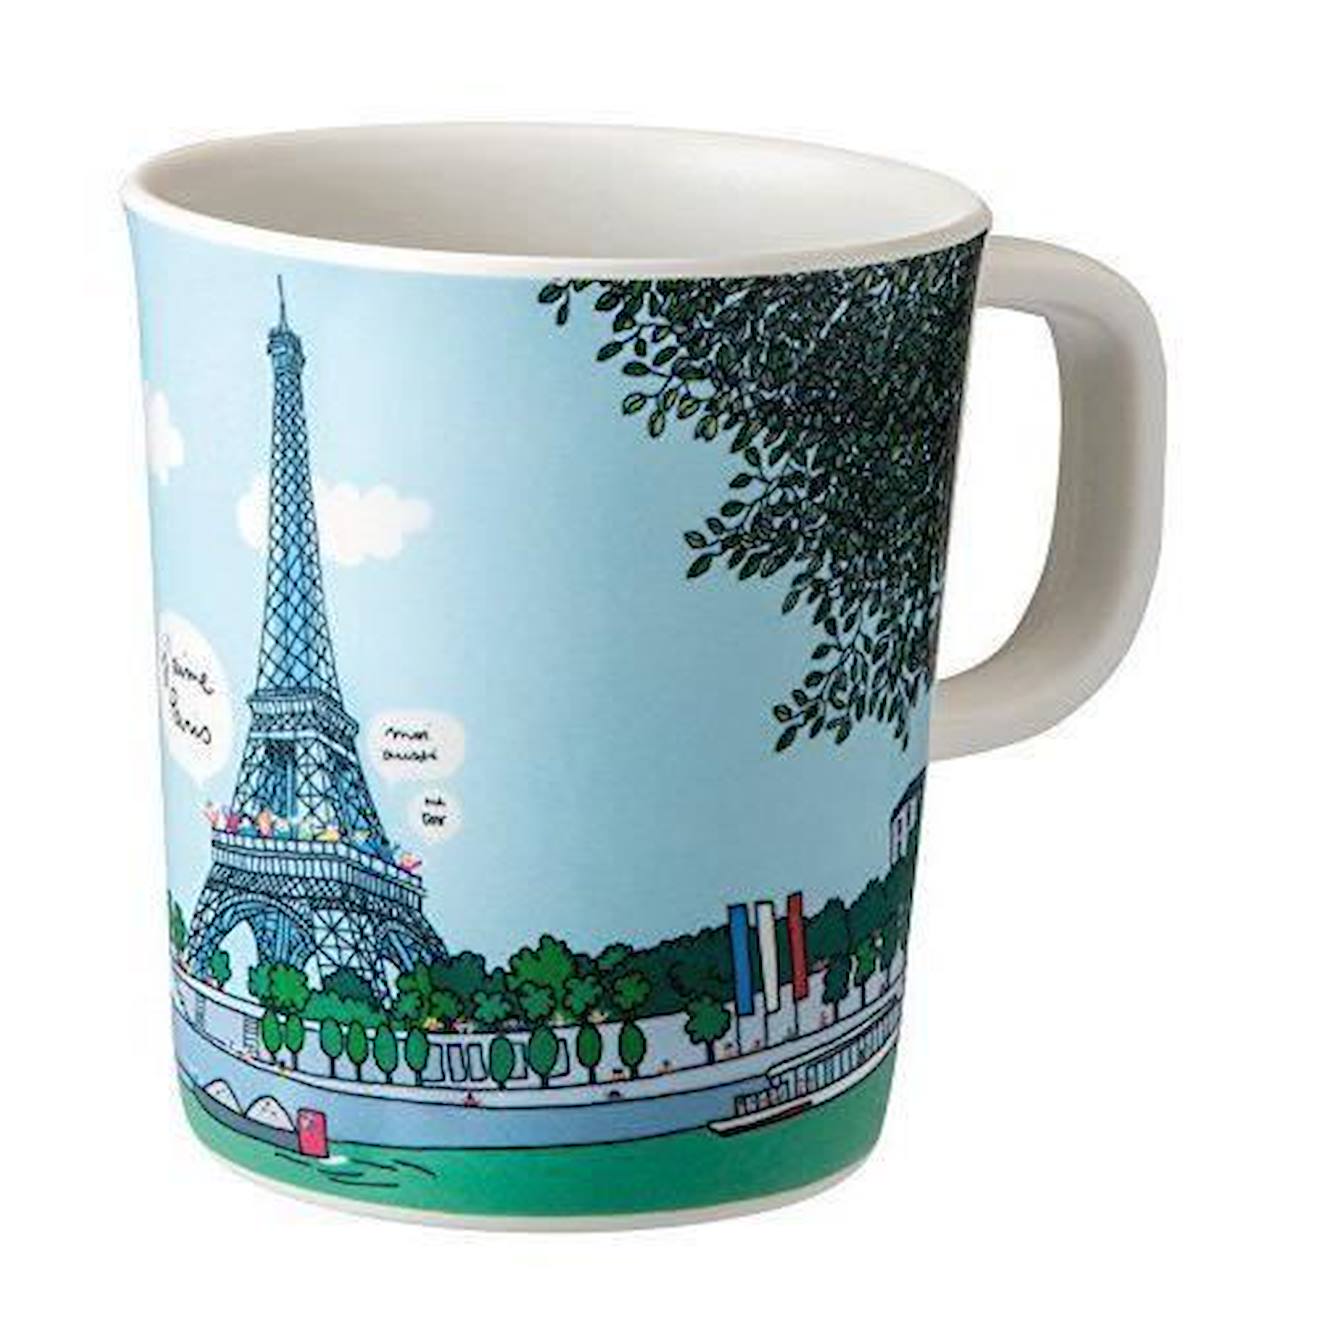 Gobelet Motif Tour Eiffel Multicolore - Petit Jour Paris - Sb912g - Puériculture - Bleu - Mixte - 12